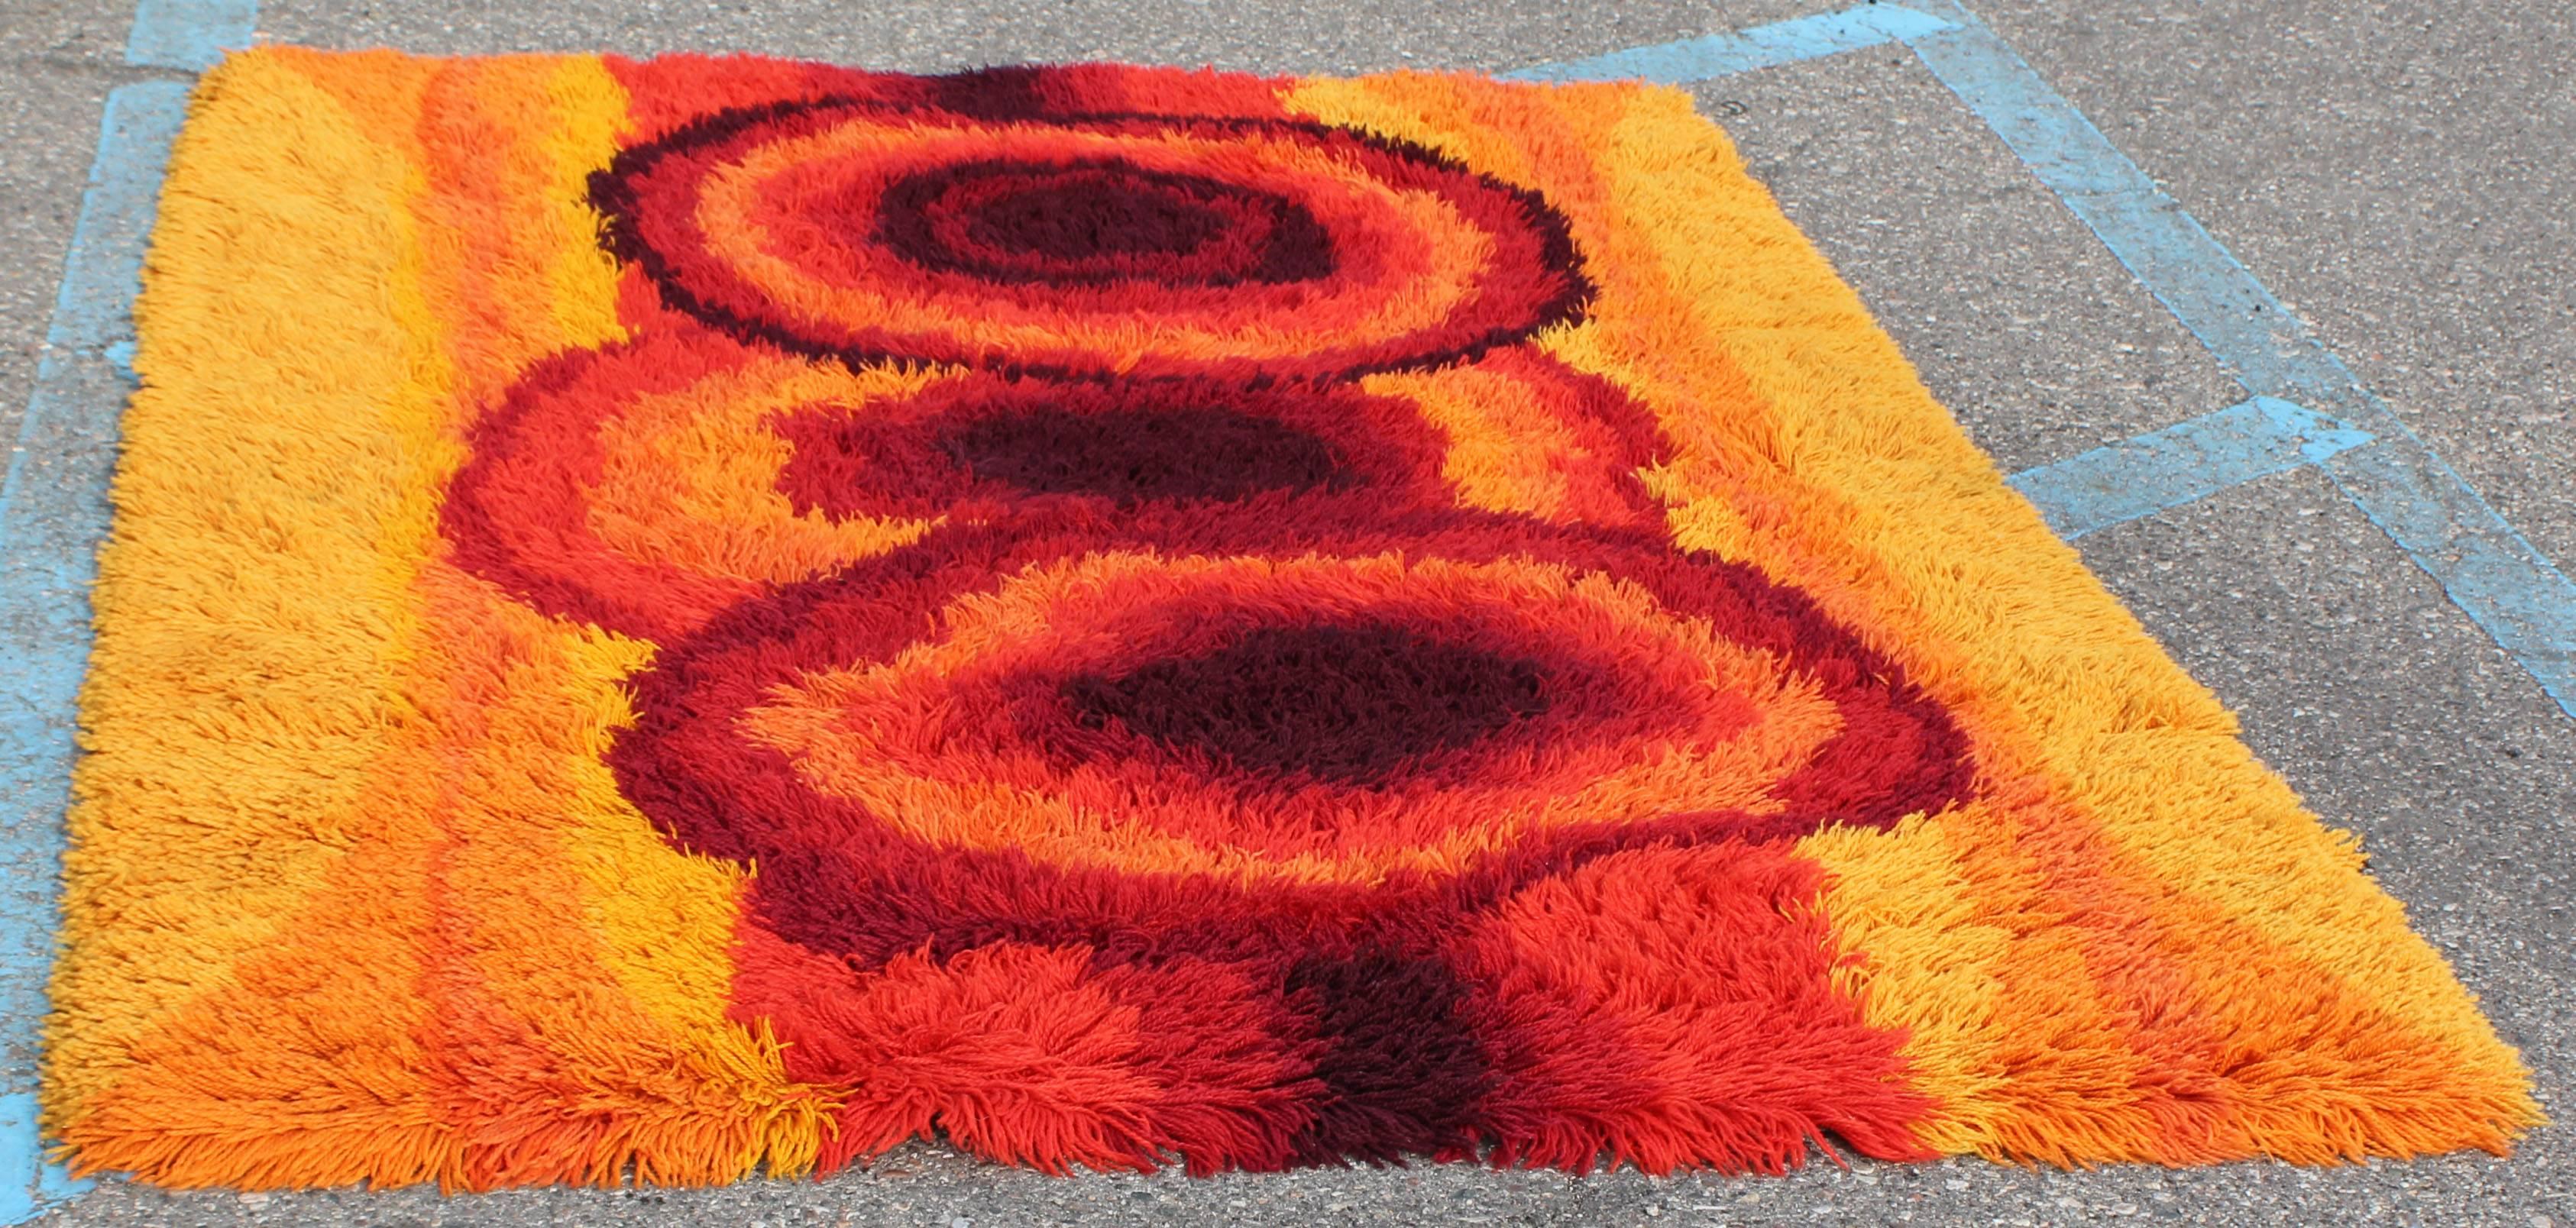 70s shag carpet